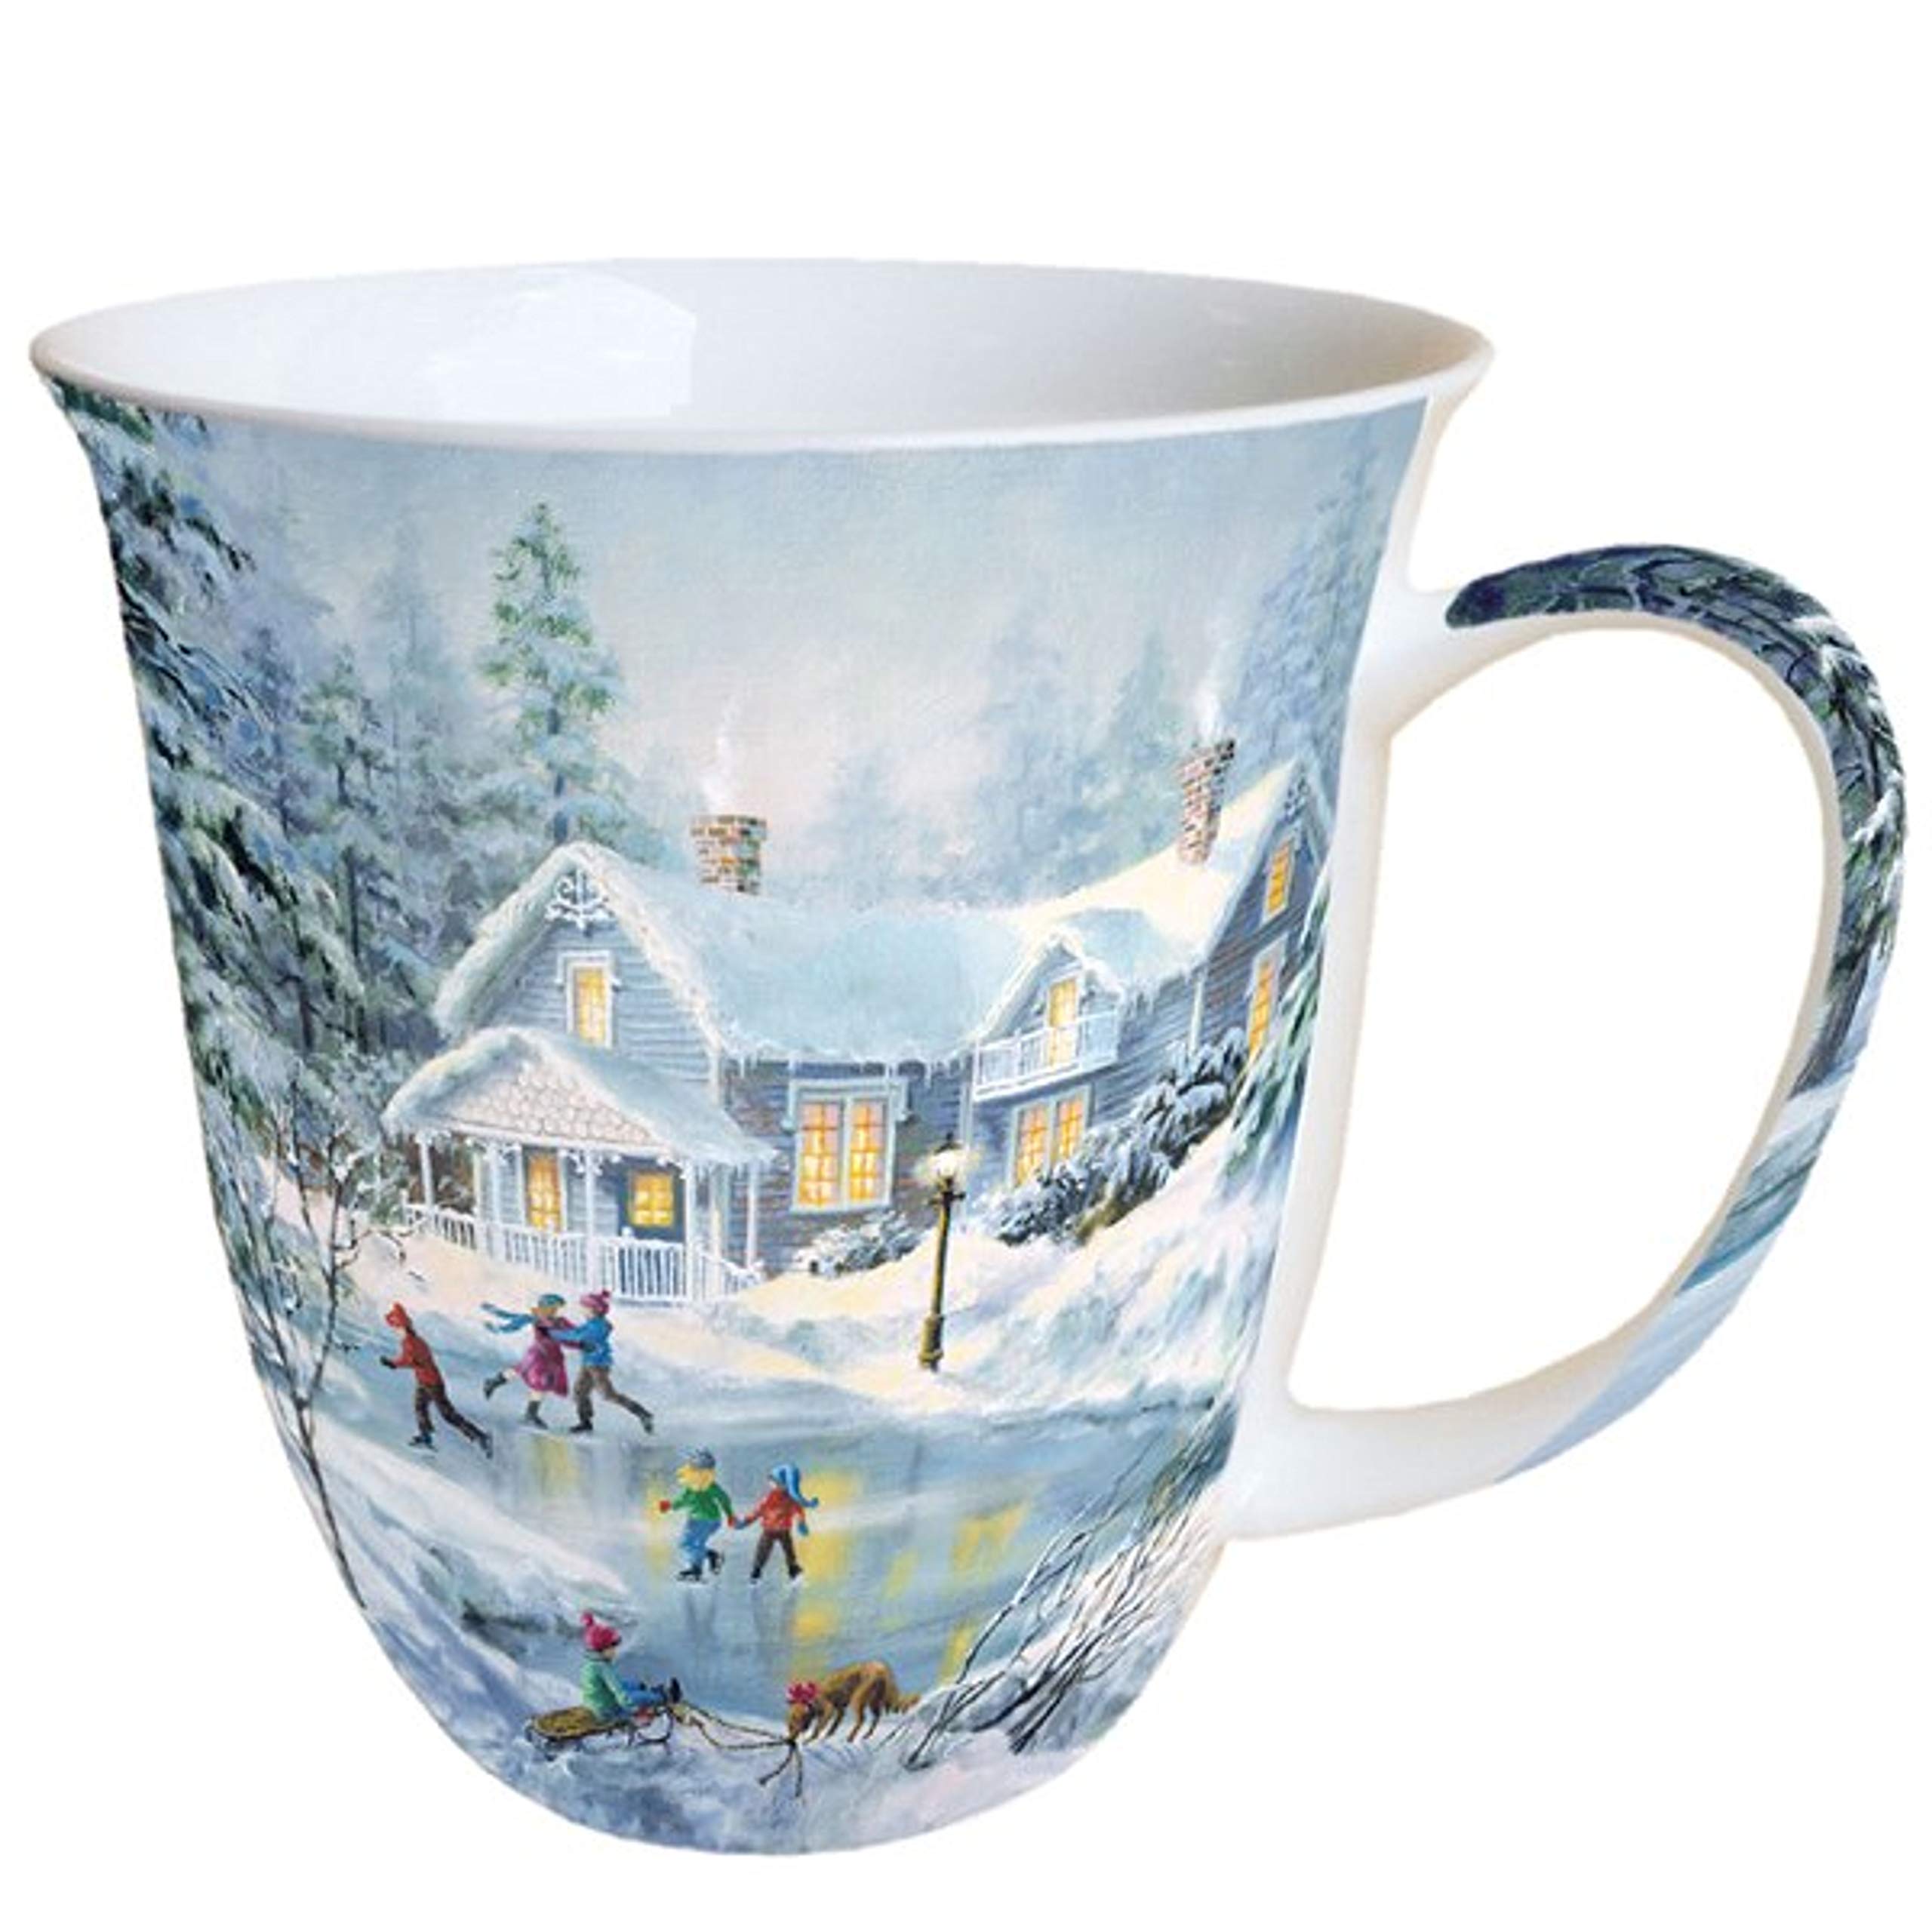 prix de gros Ambiente Mug de Noël Soirée Skating Mug 0.4L en porcelaine anglaise pPMvNX3O4 pas cher